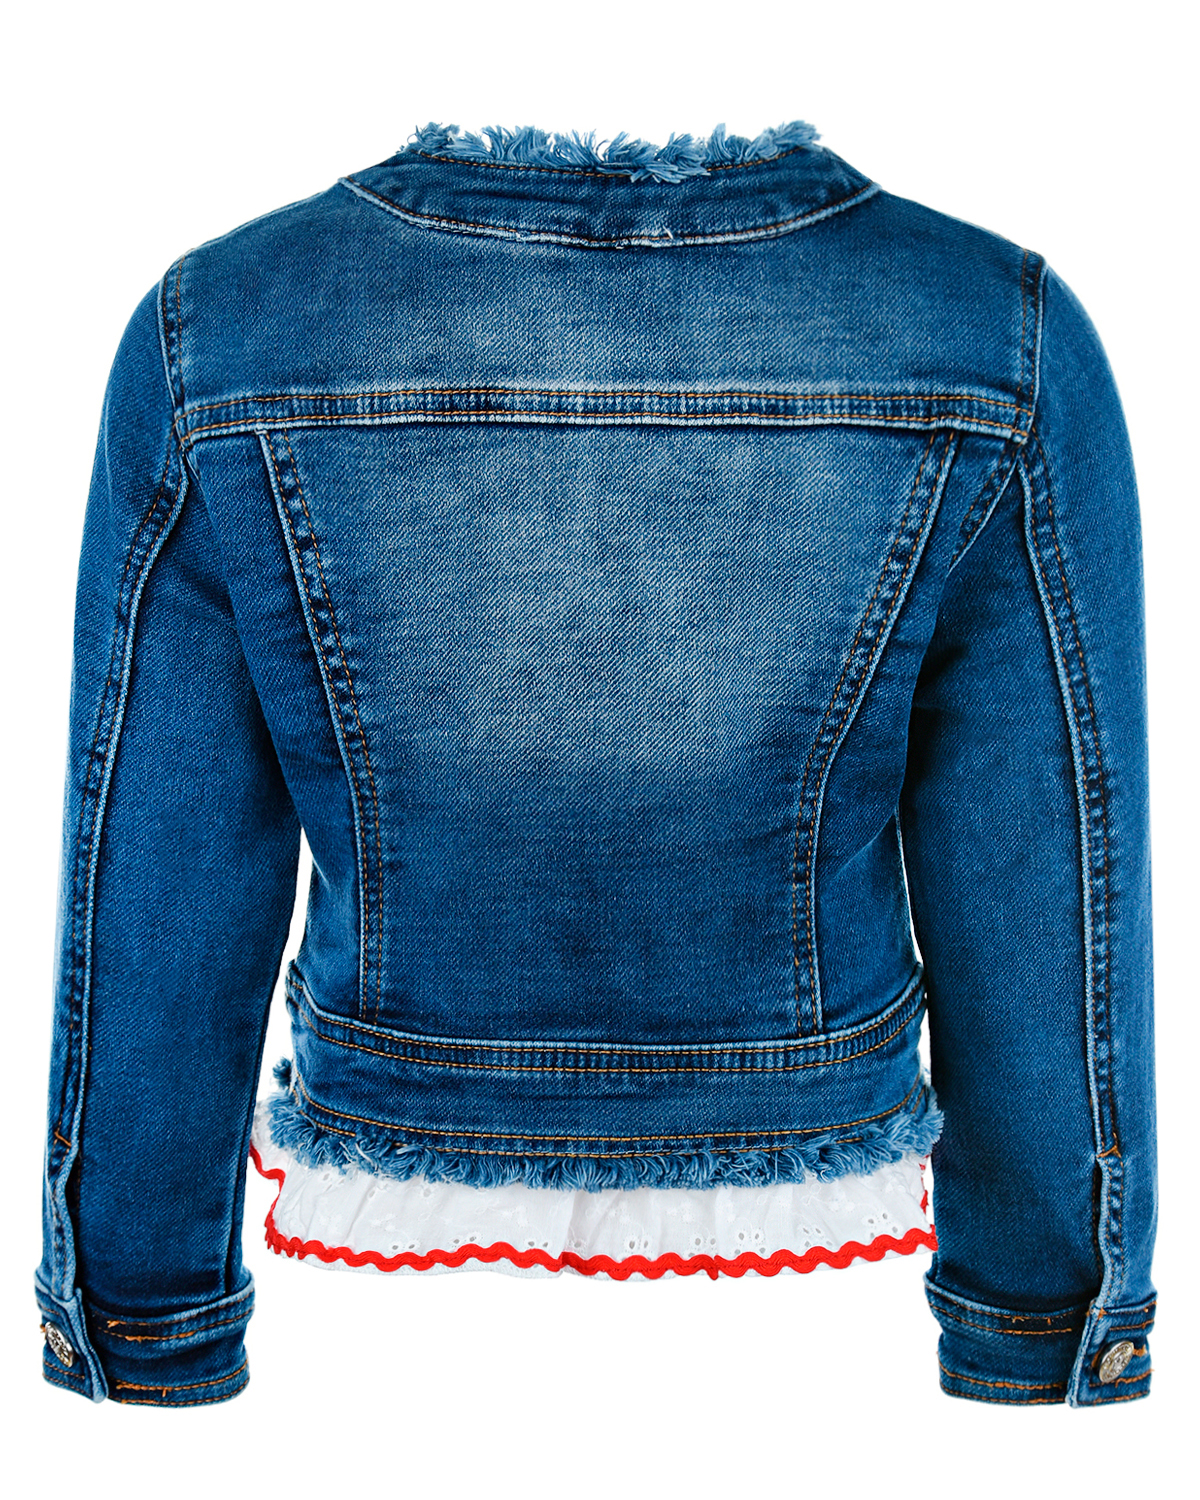 Джинсовая куртка с декором "Клубника" Monnalisa детская, размер 110, цвет синий - фото 2